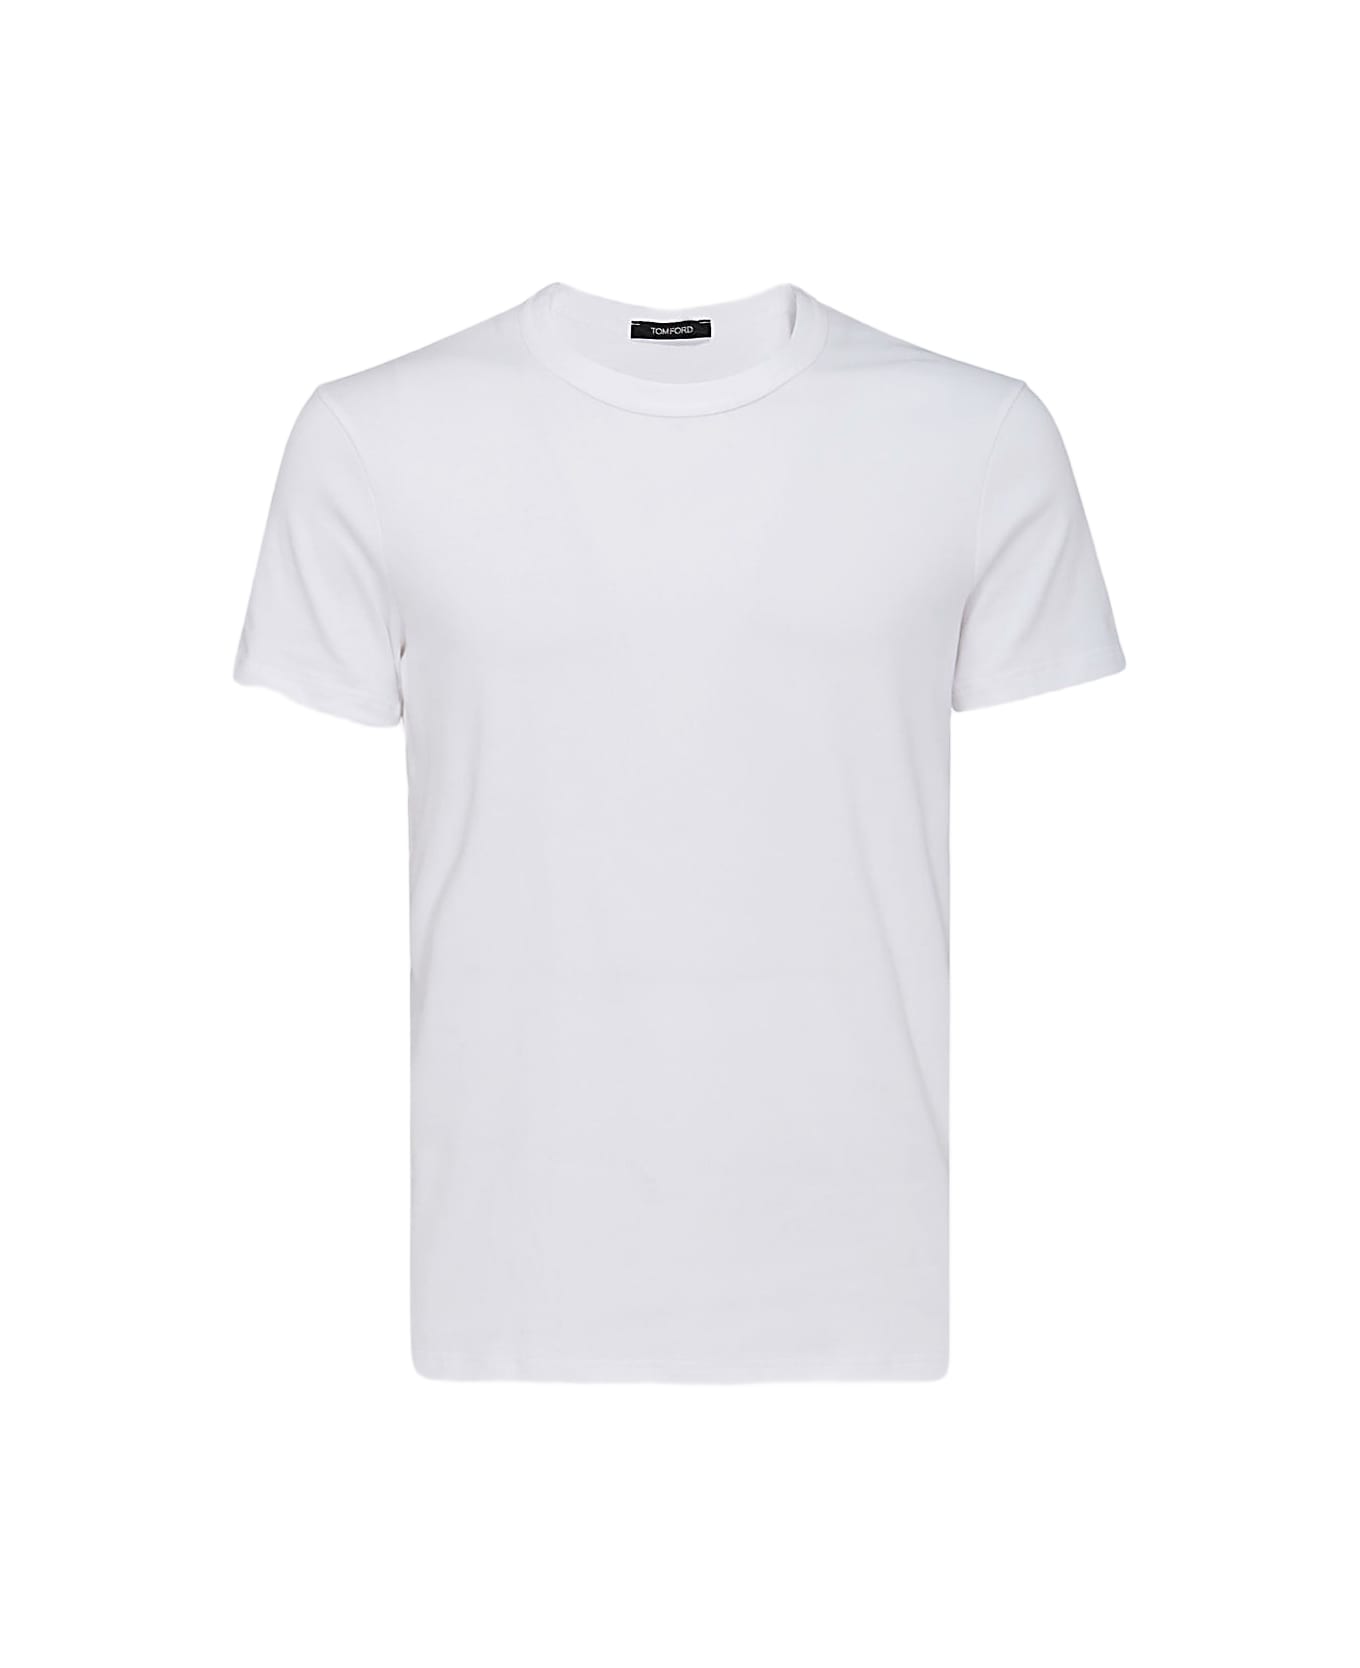 Tom Ford White Cotton T-shirt - White シャツ